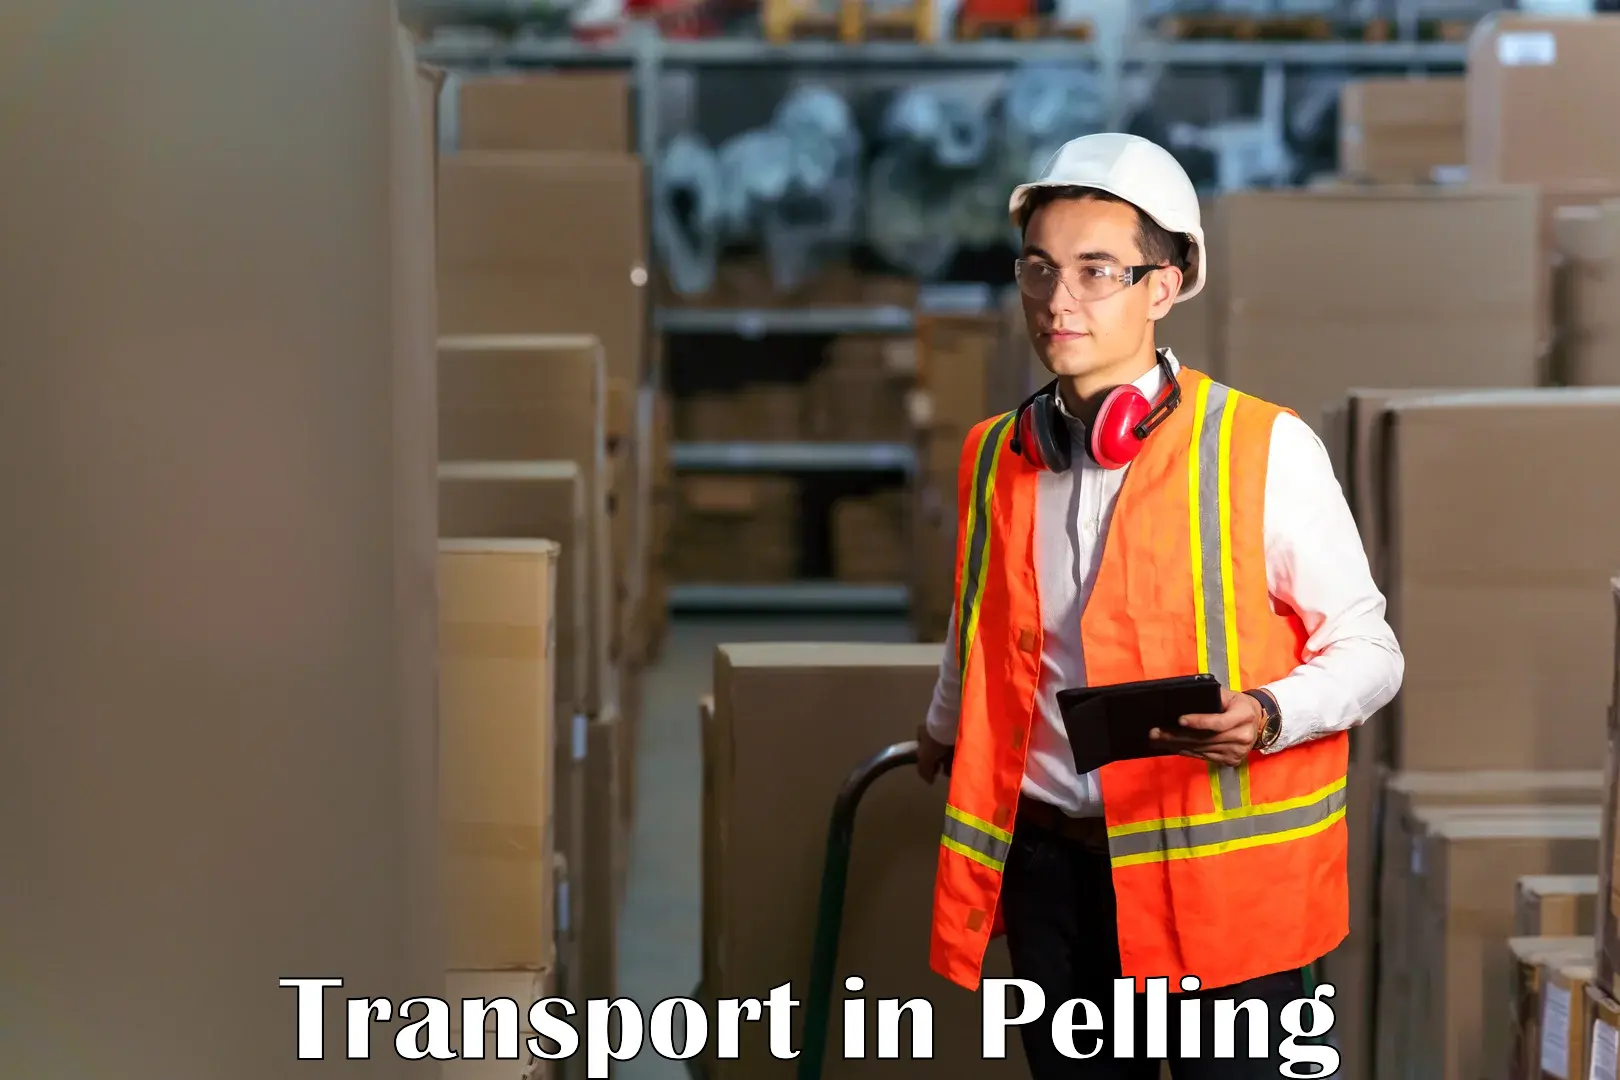 Nearest transport service in Pelling